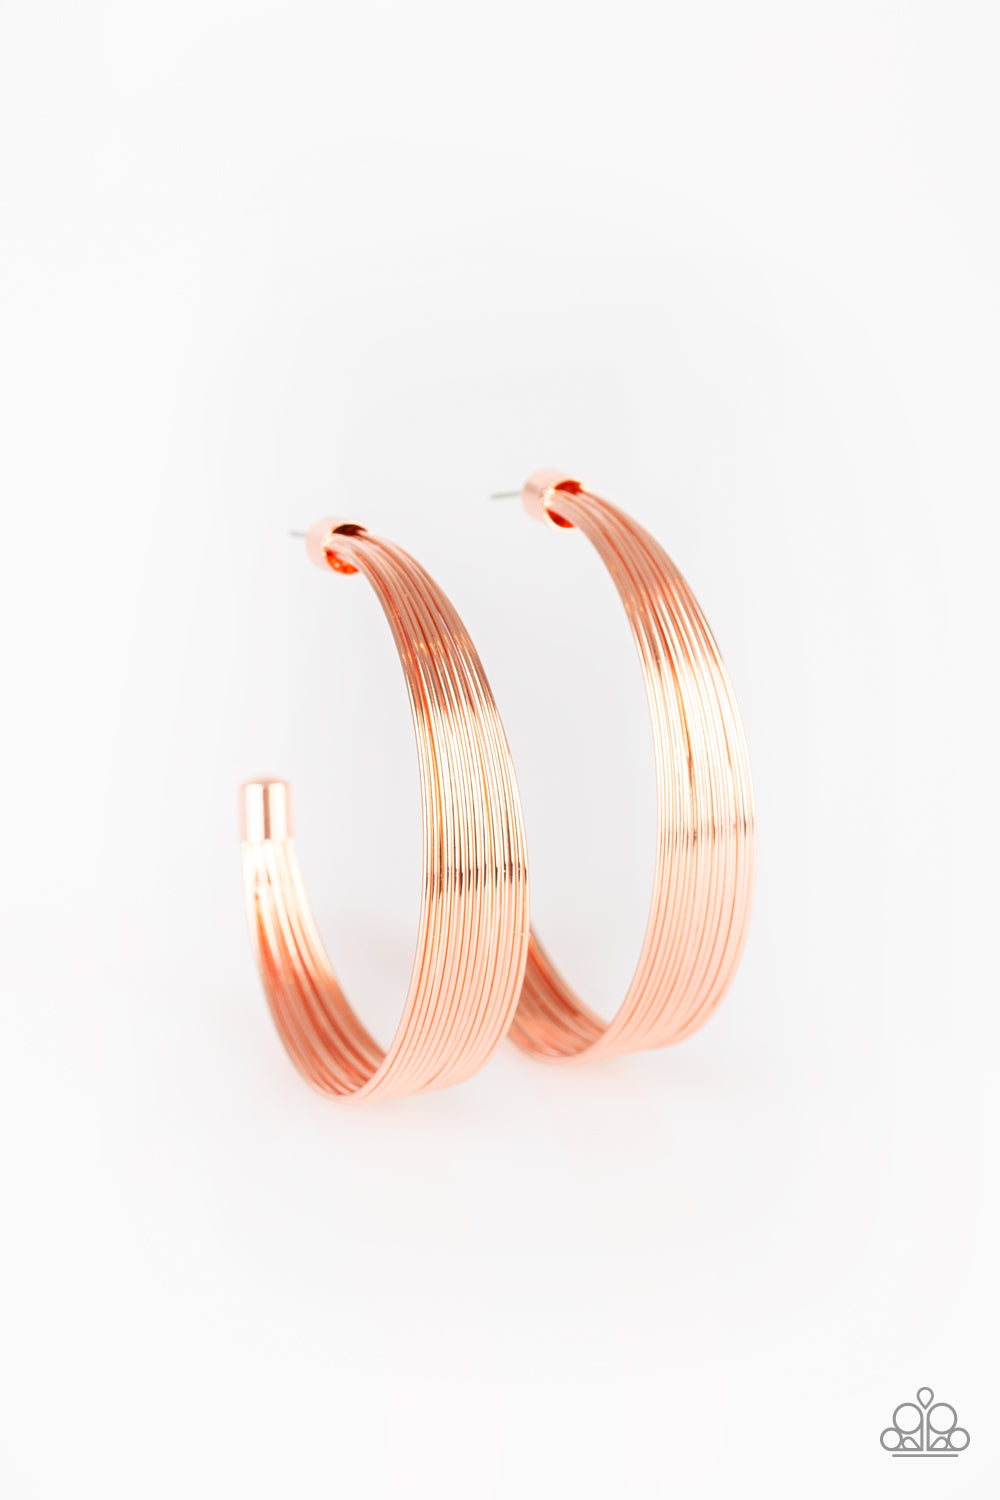 Live Wire - Copper Earrings